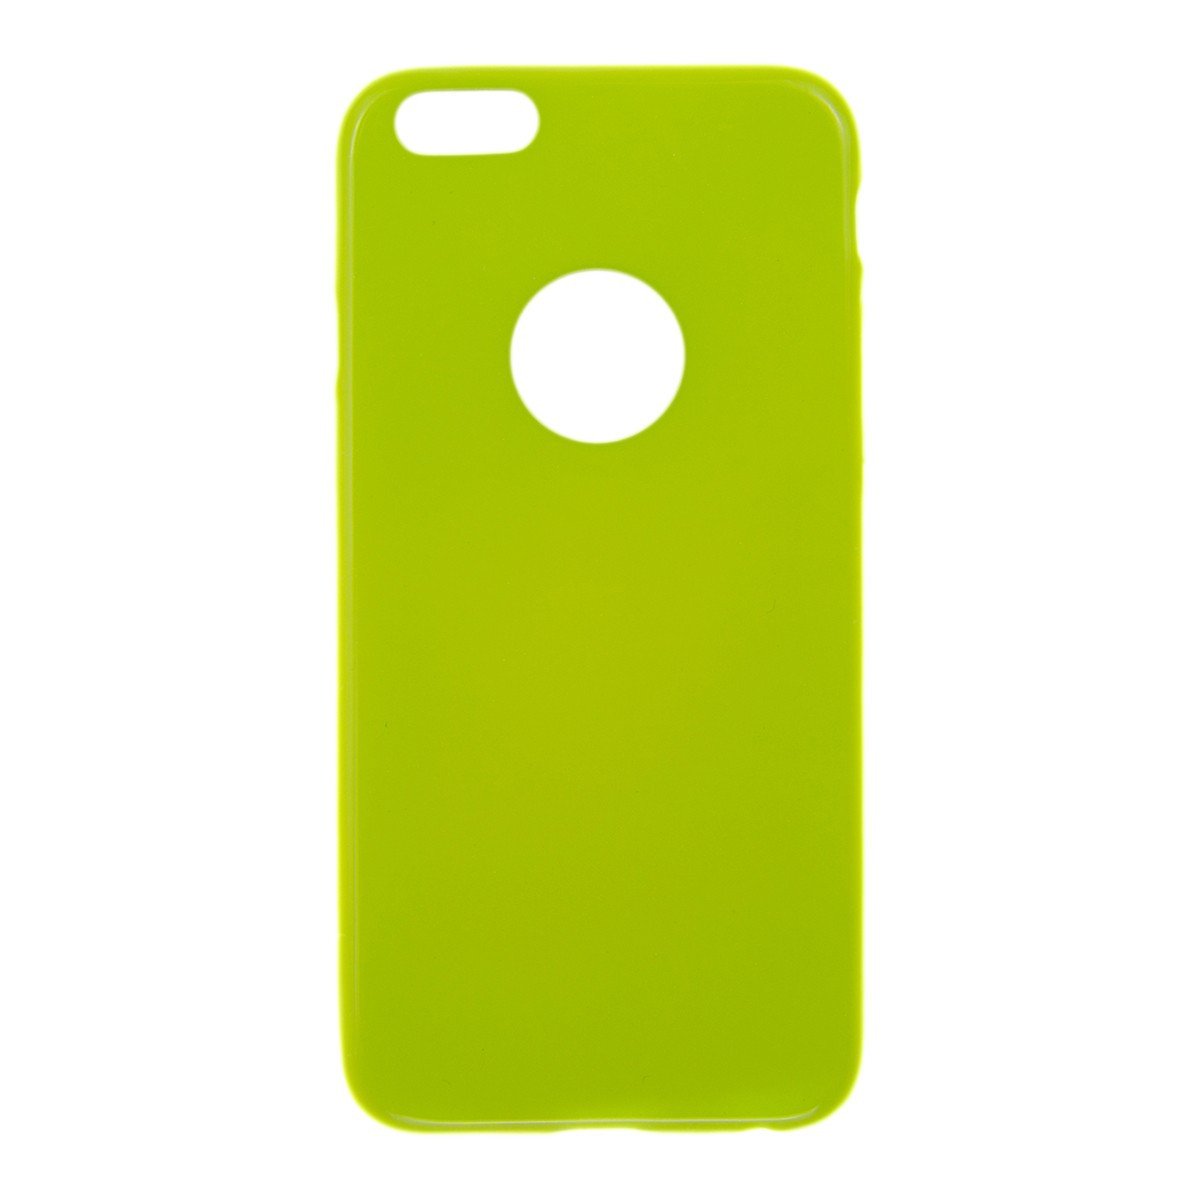 Θηκη TPU Jelly UV - iPhone 6/6s - Lime - iThinksmart.gr